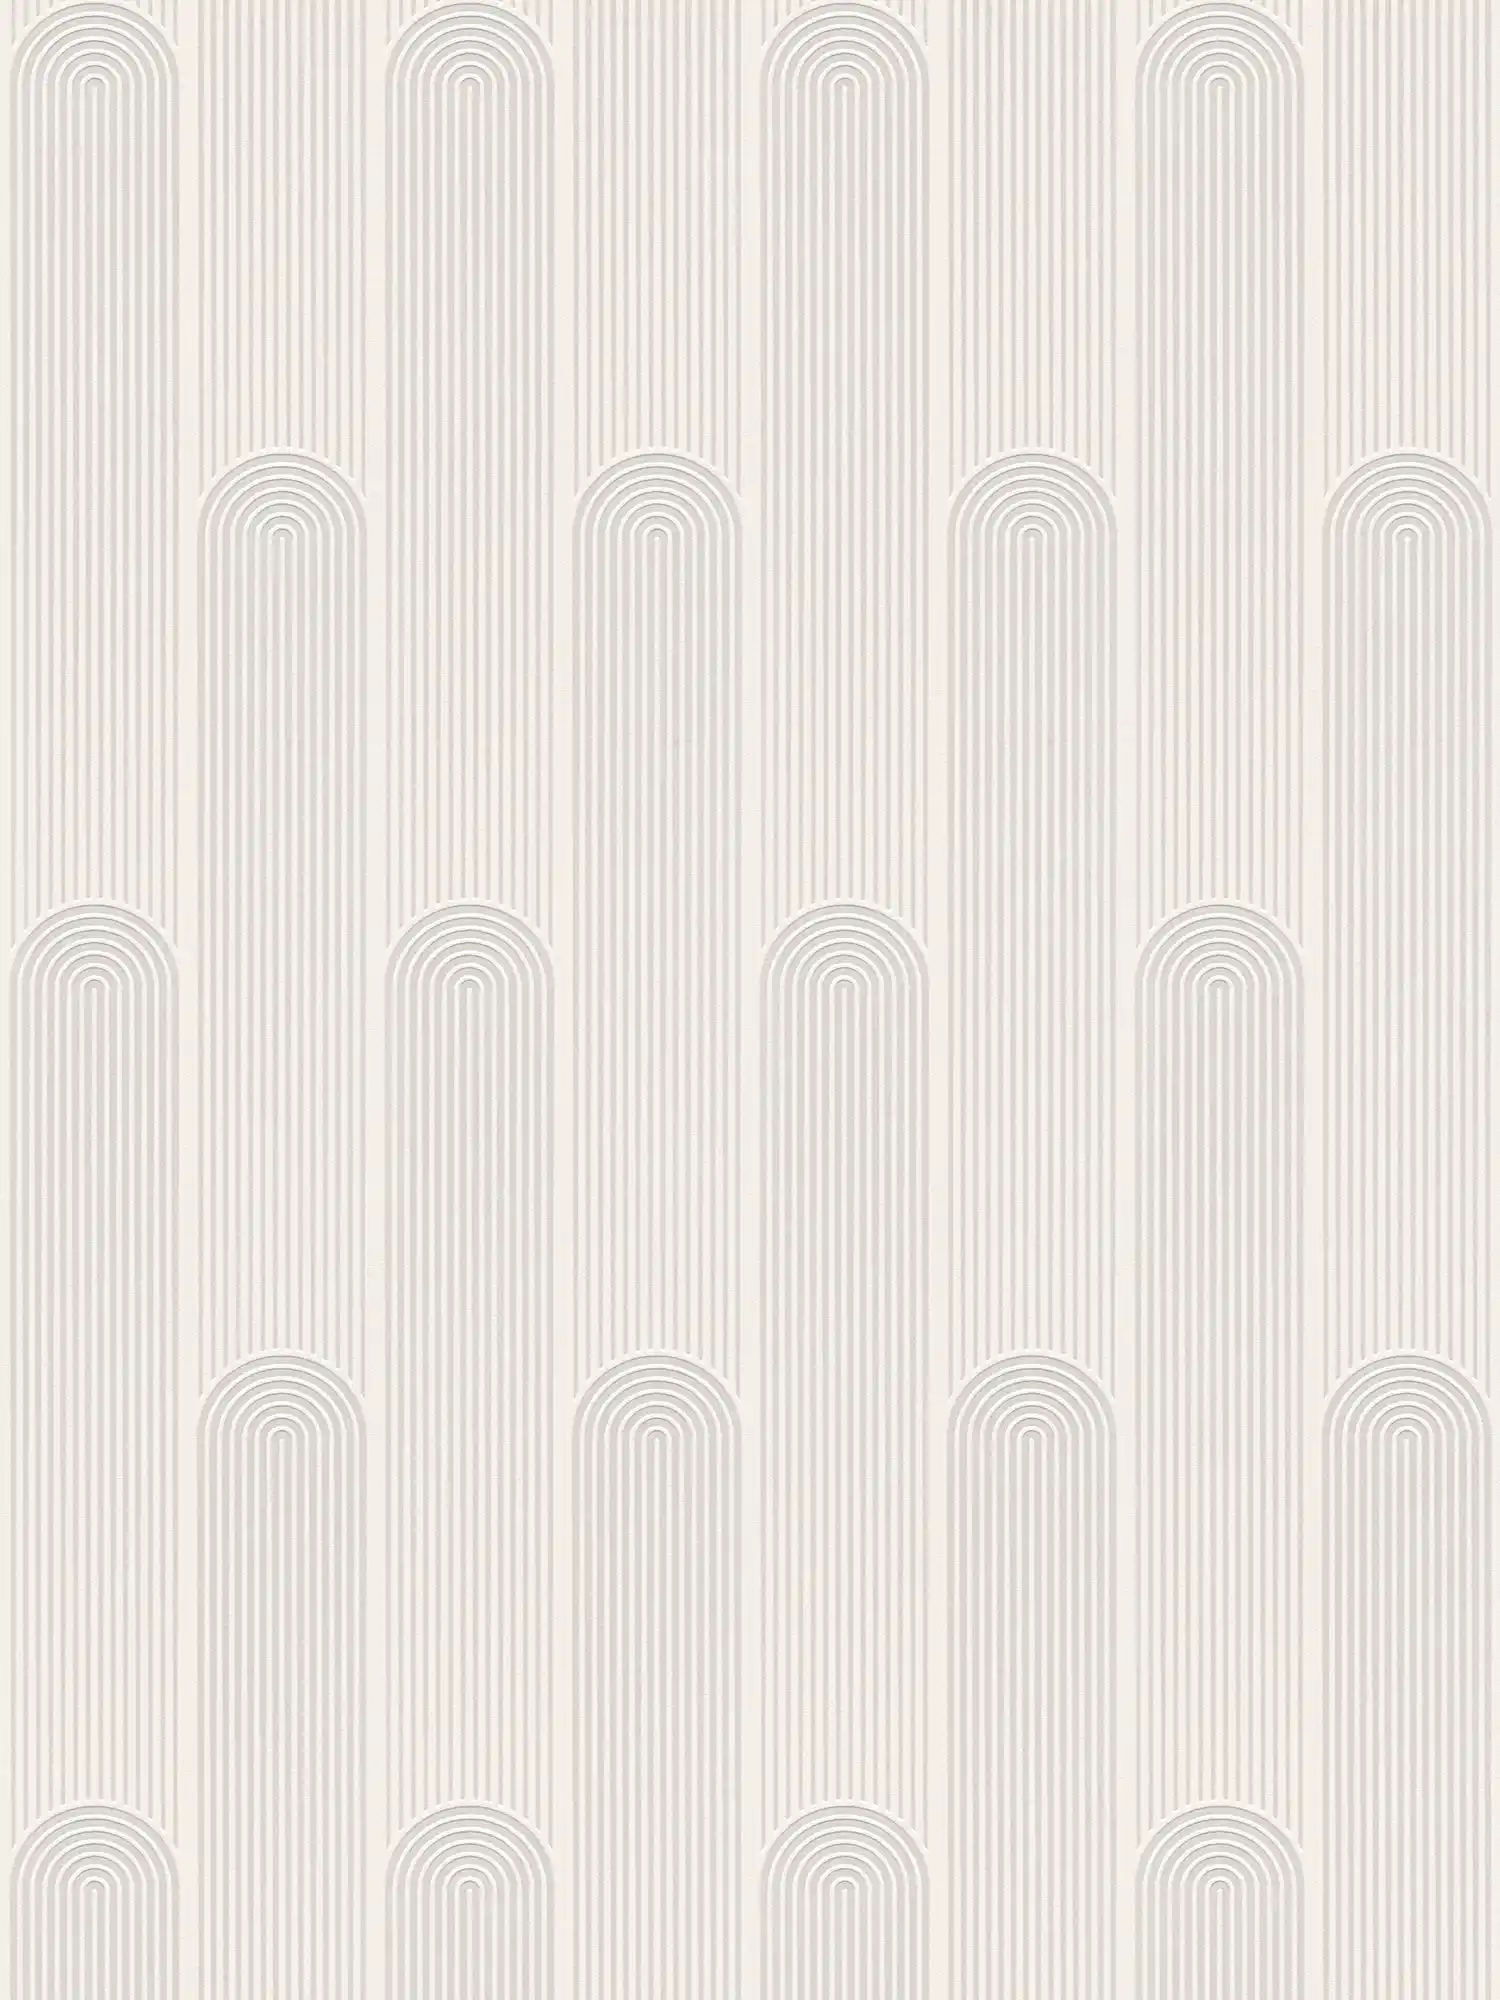 Papel pintado de diseño retro de líneas art decó - blanco, gris
